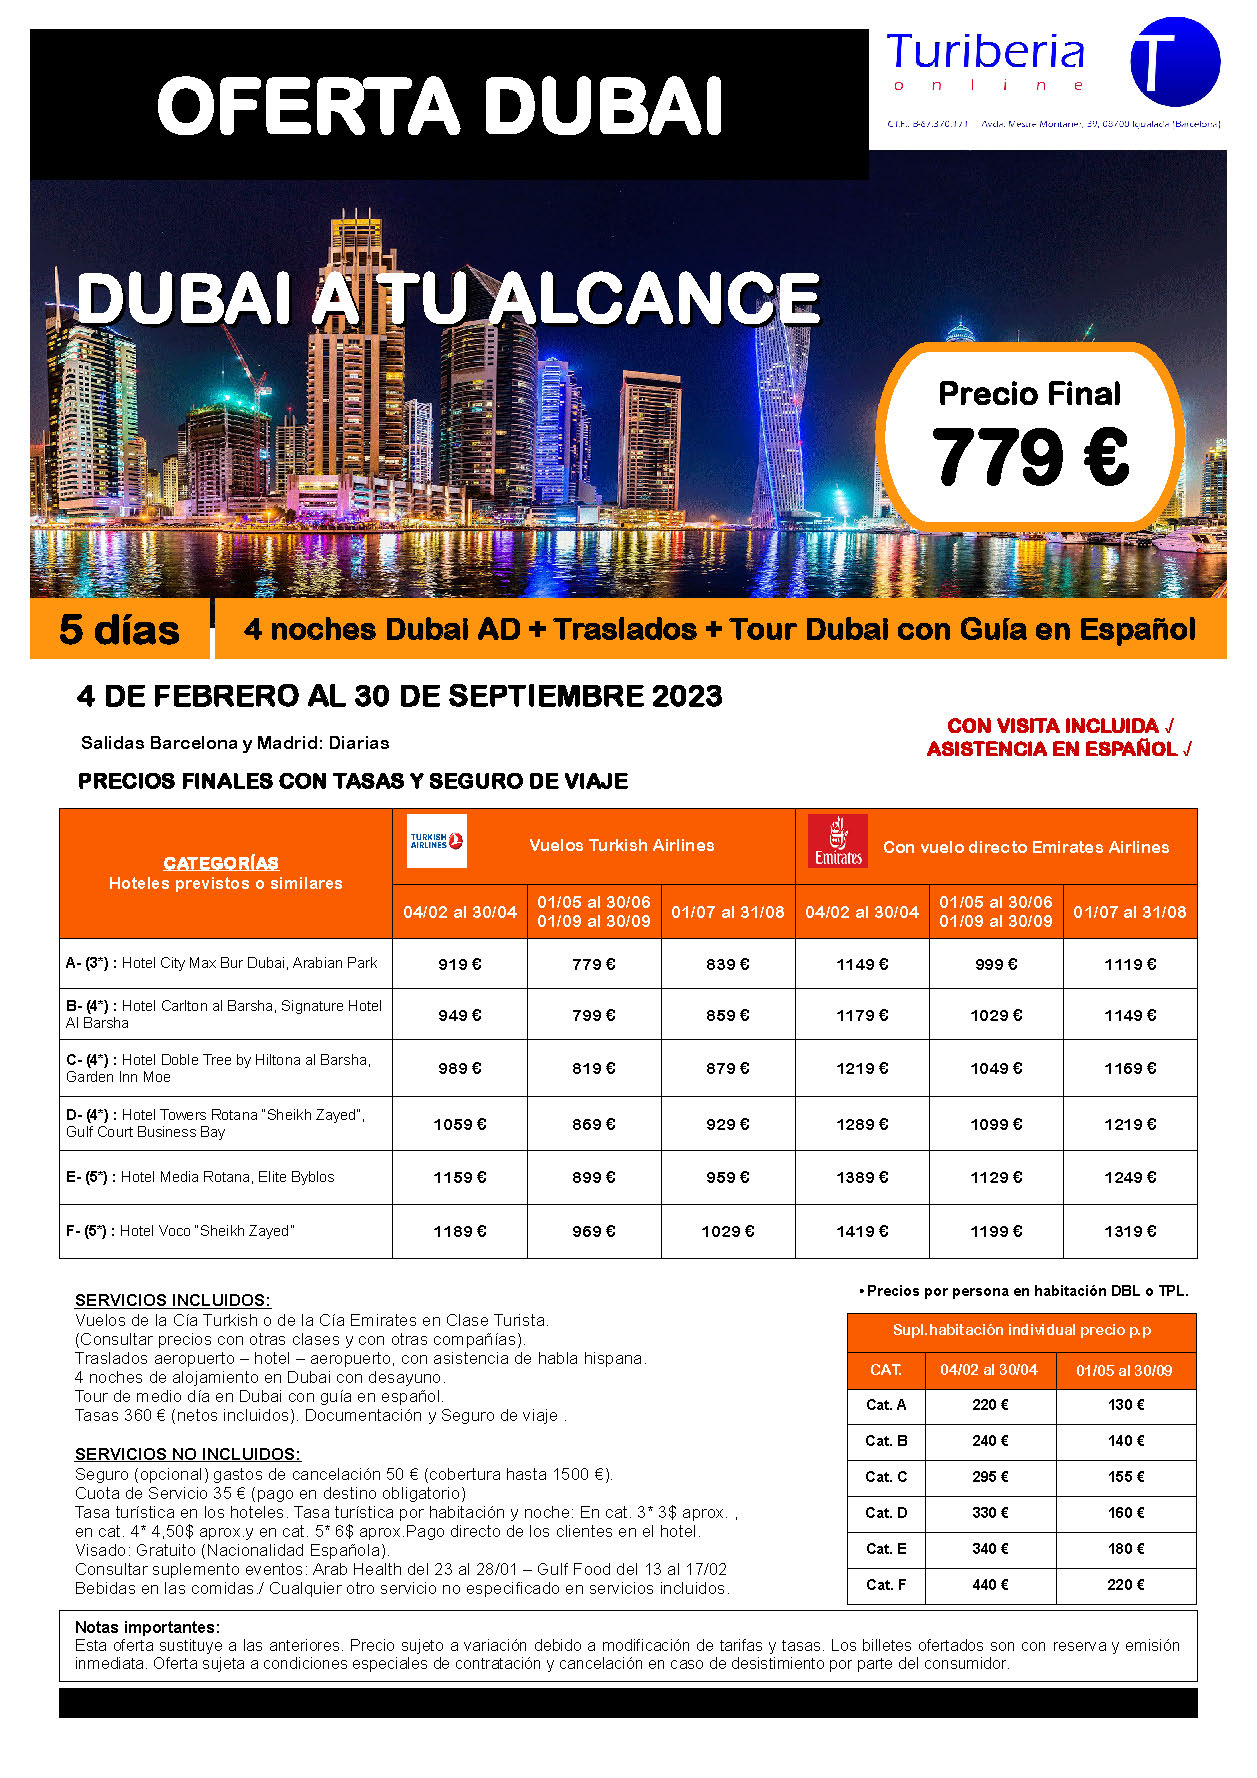 Oferta Turiberia Dubai a tu Alcance 5 dias Primavera y Verano 2023 salidas desde Barcelona y Madrid